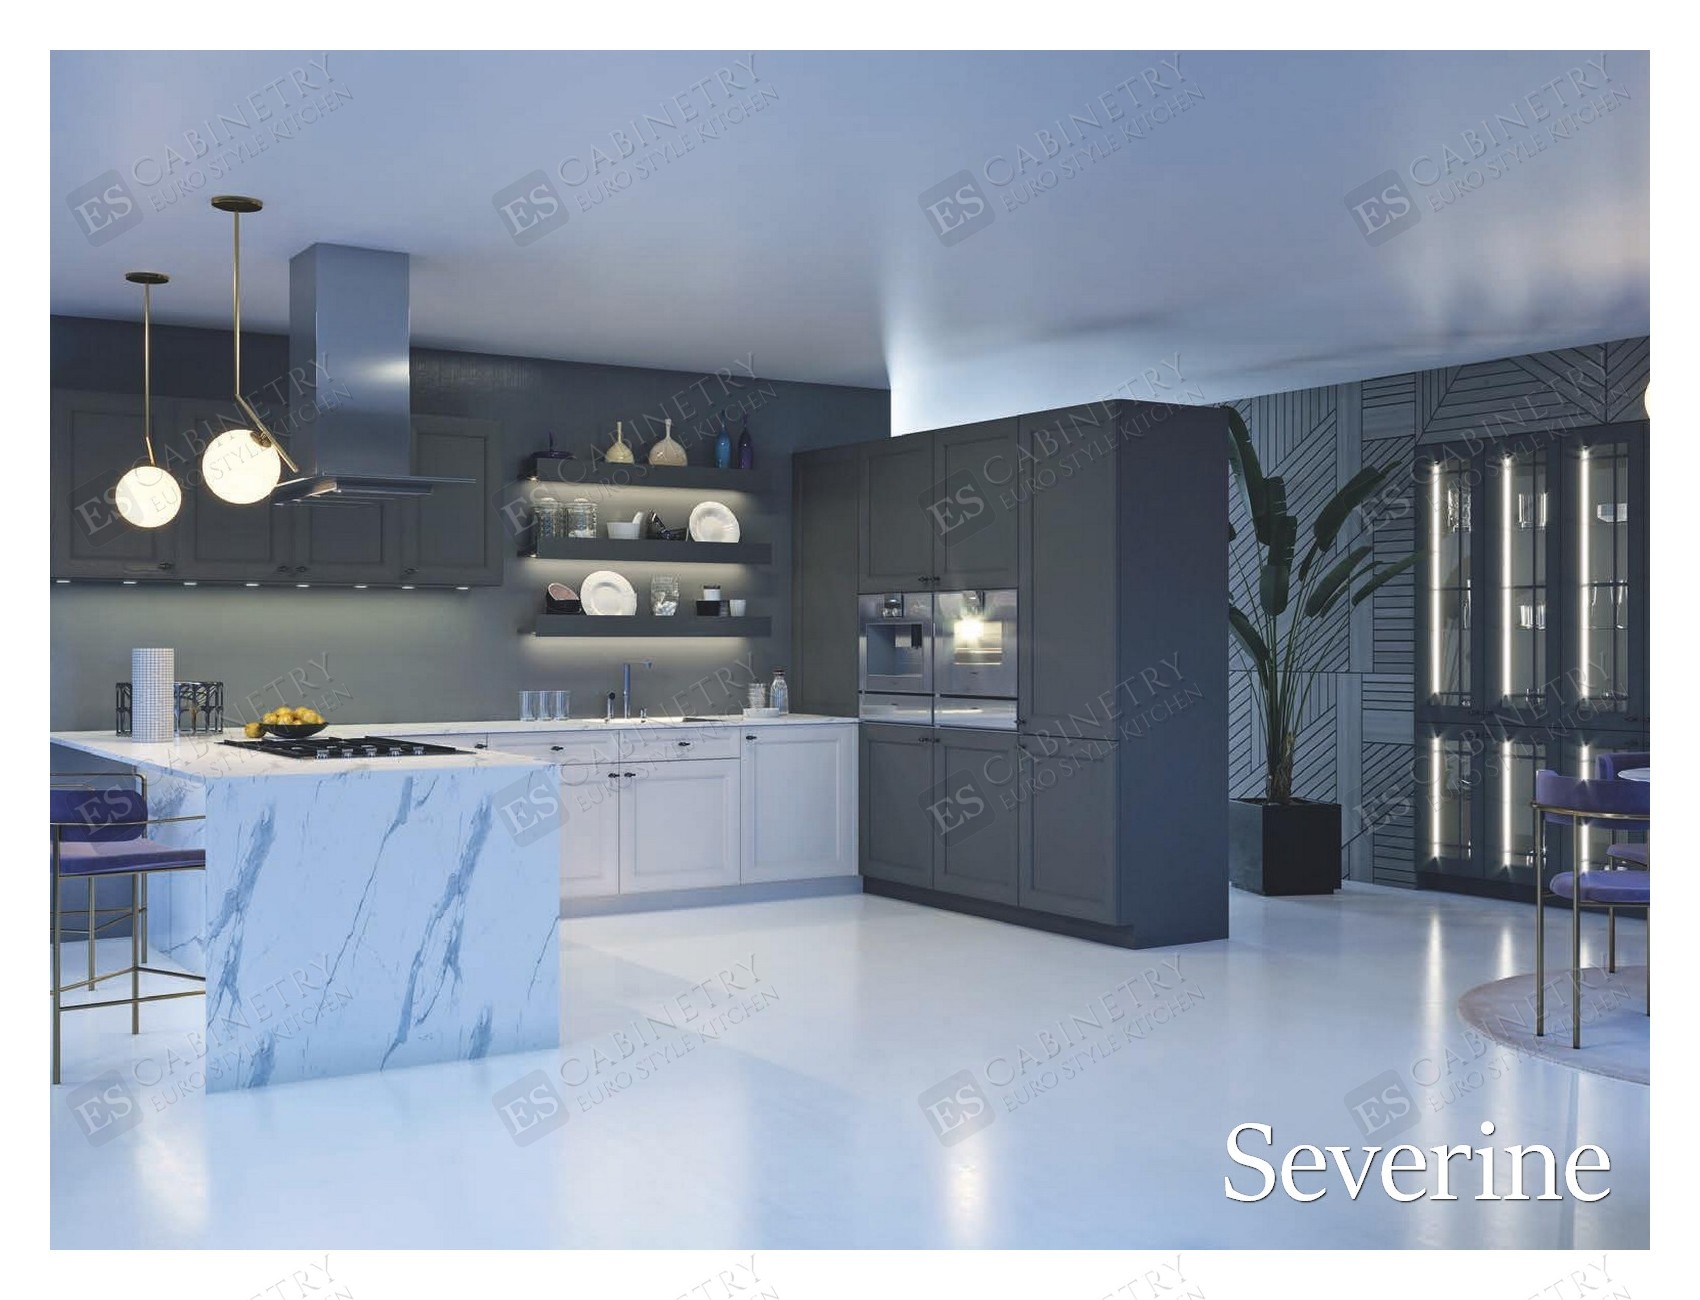 Severine | Modern European kitchen designs